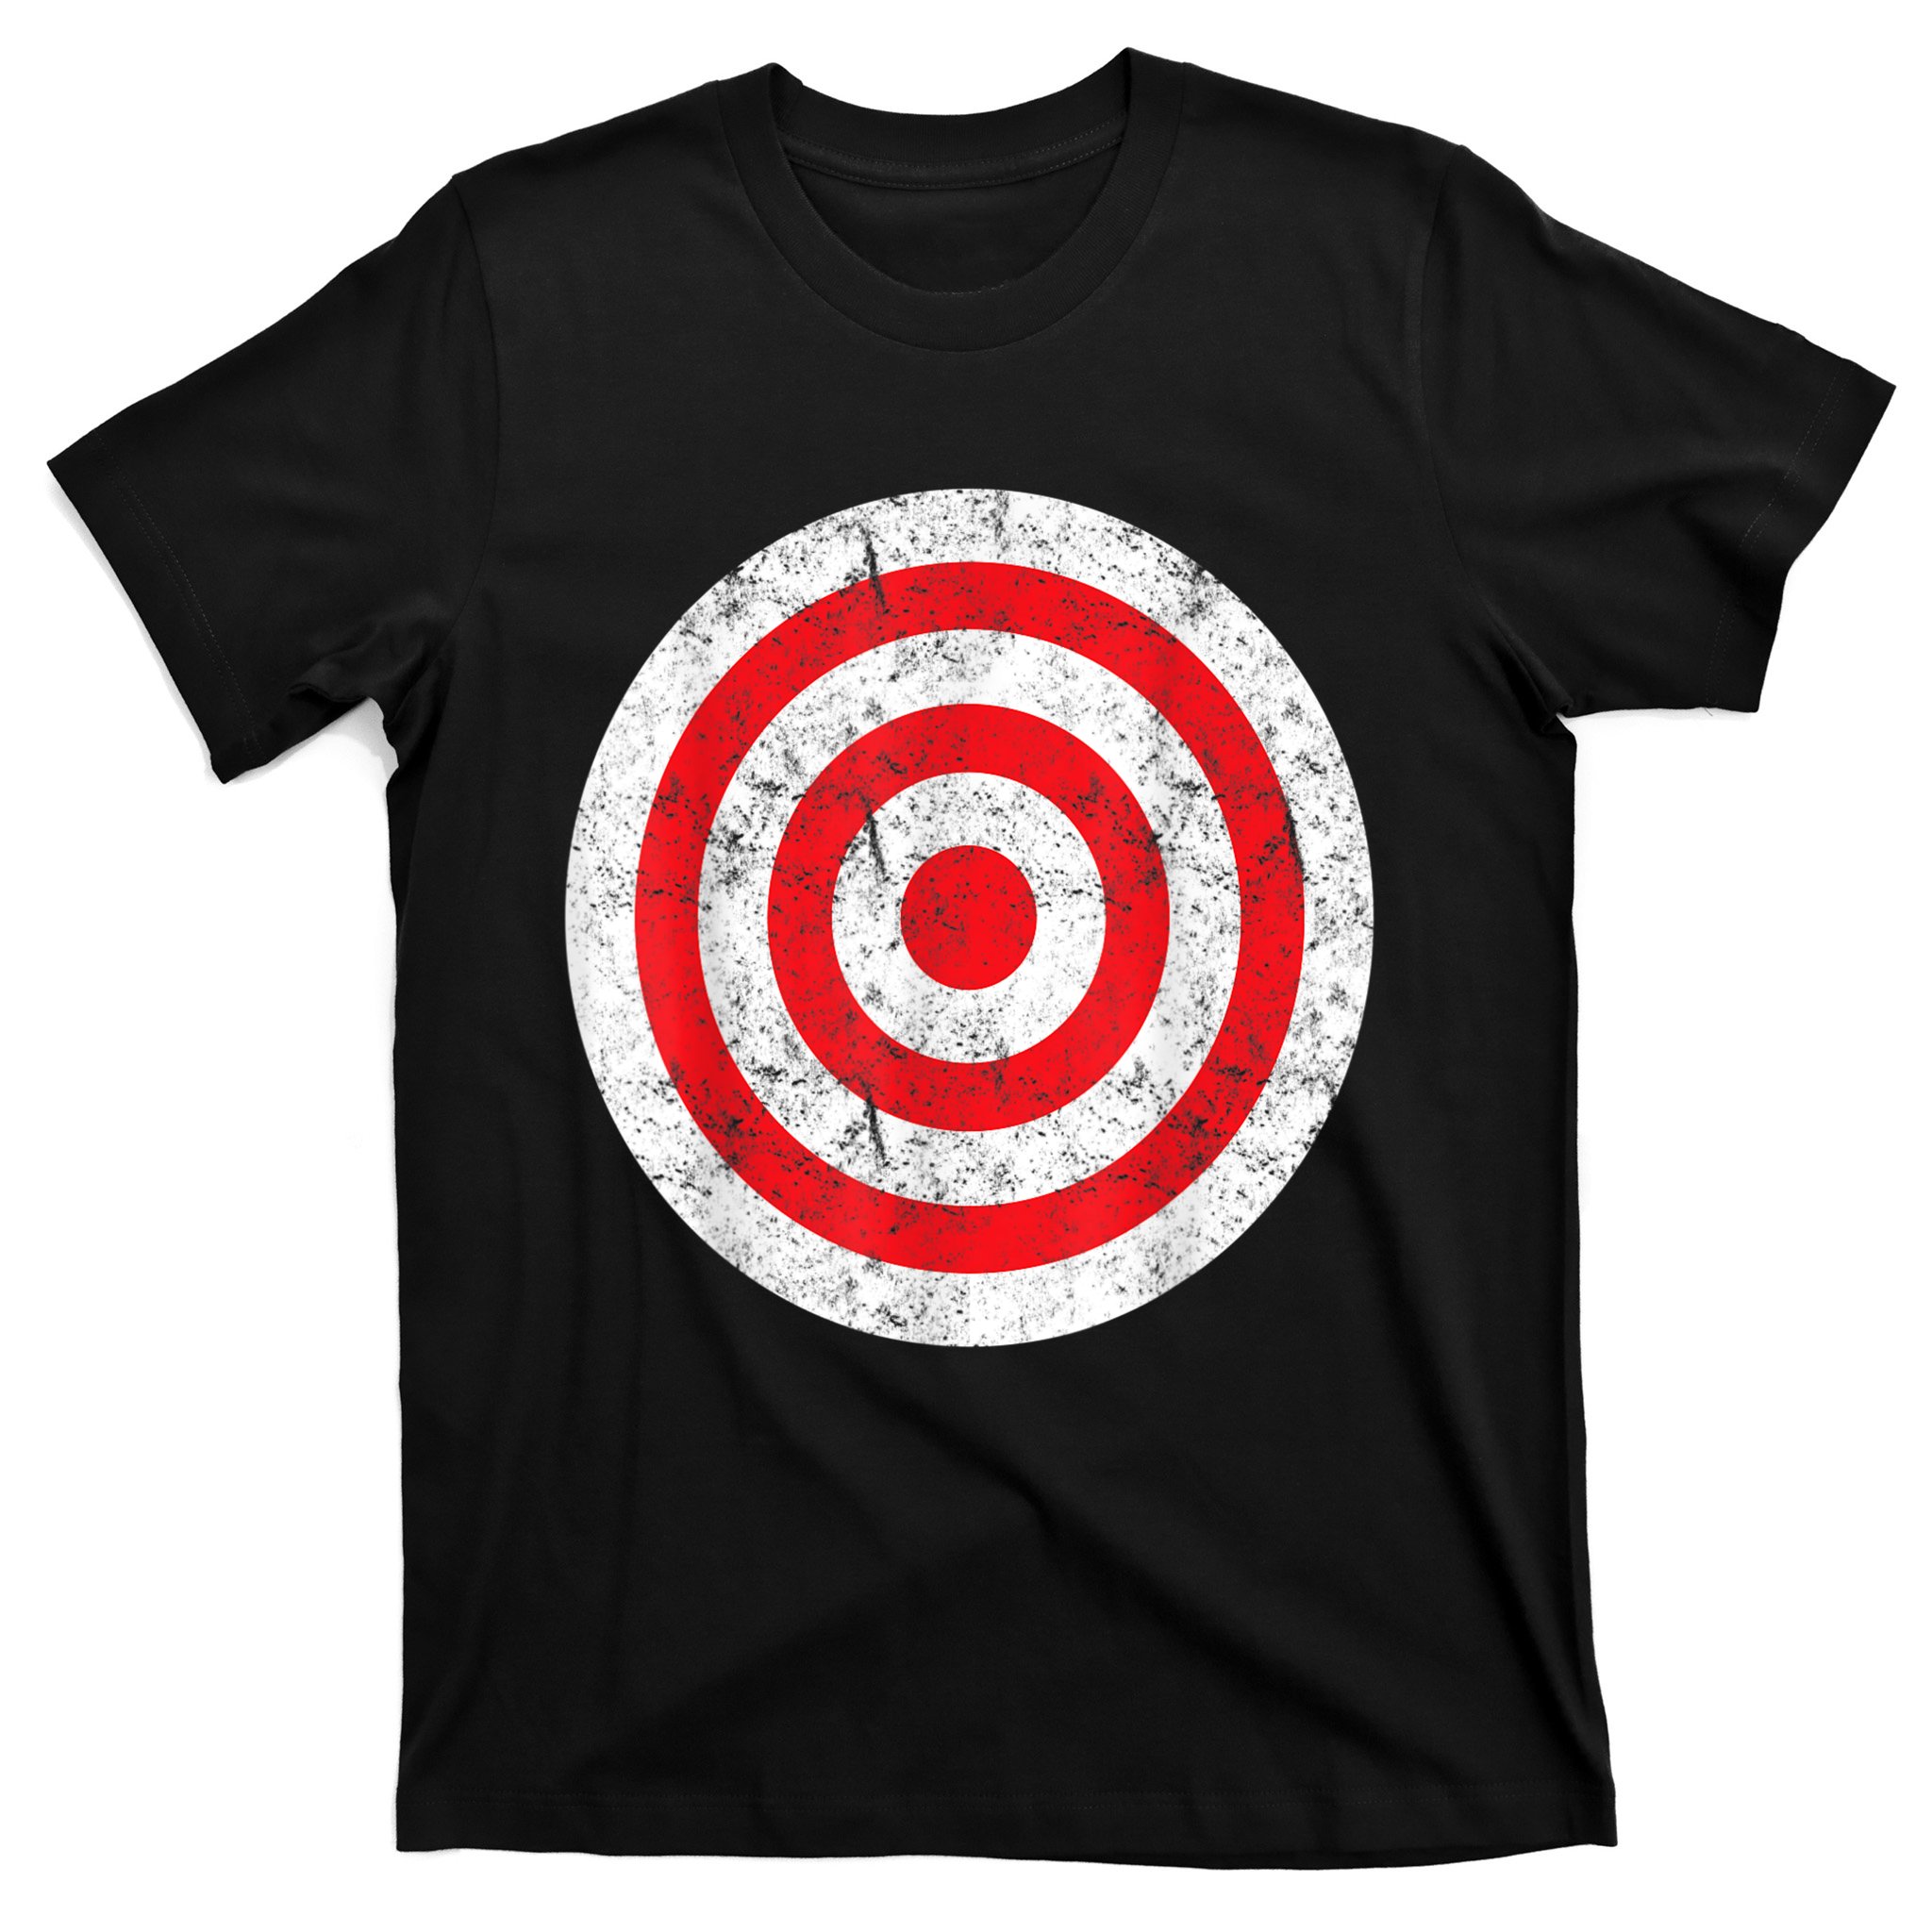 Print on Back) Funny Bullseye Target Bulls Eye Joke T-Shirt Size S